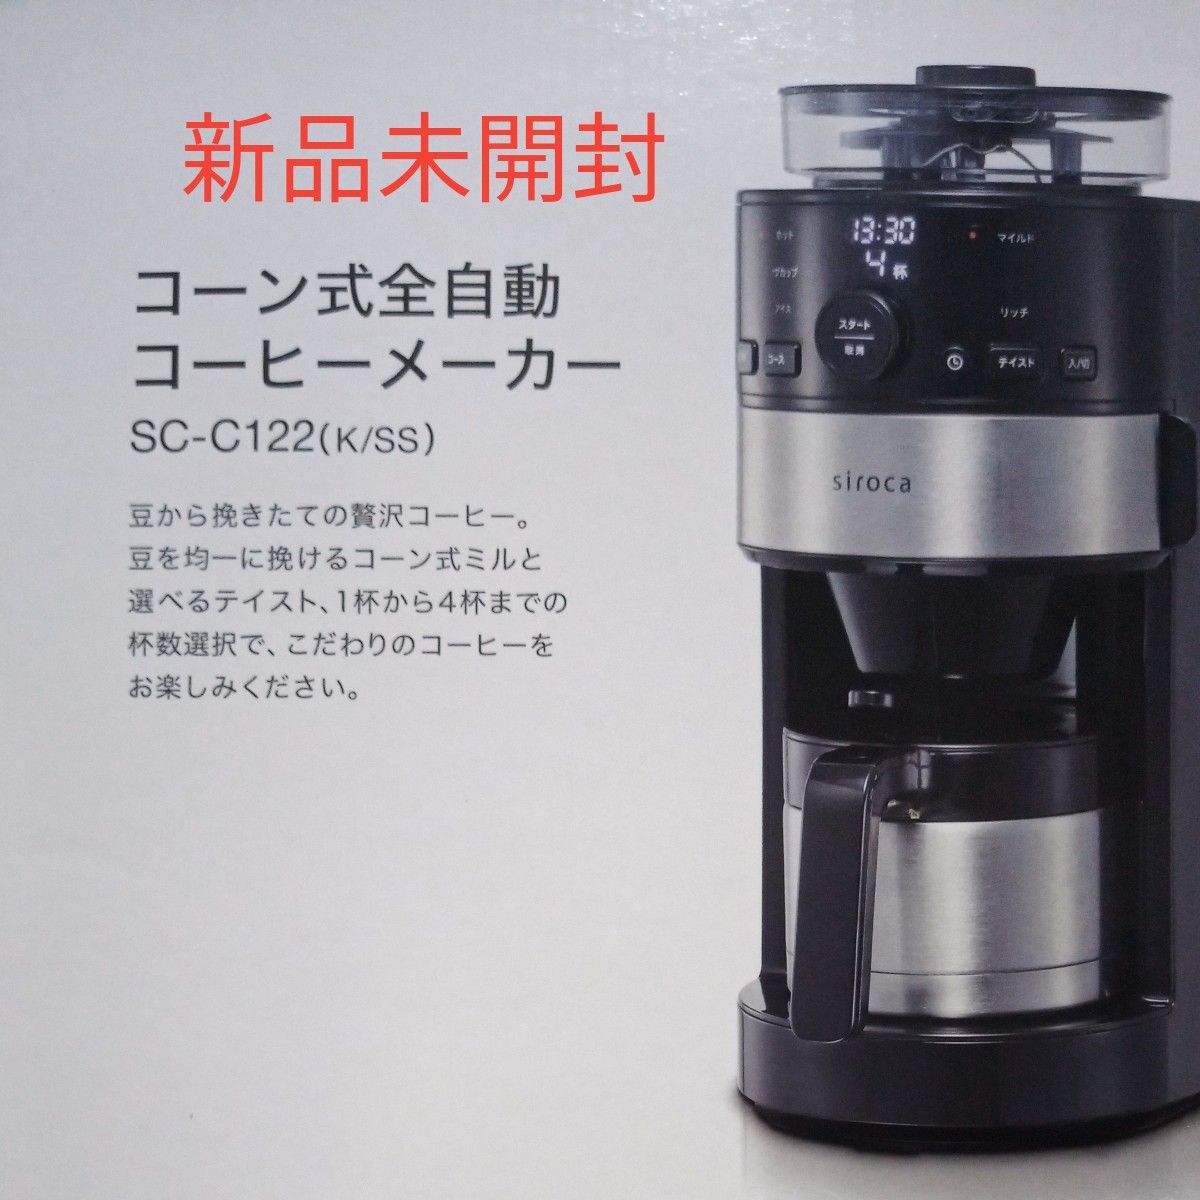 シロカ siroca コーン式全自動コーヒーメーカー SC-C122